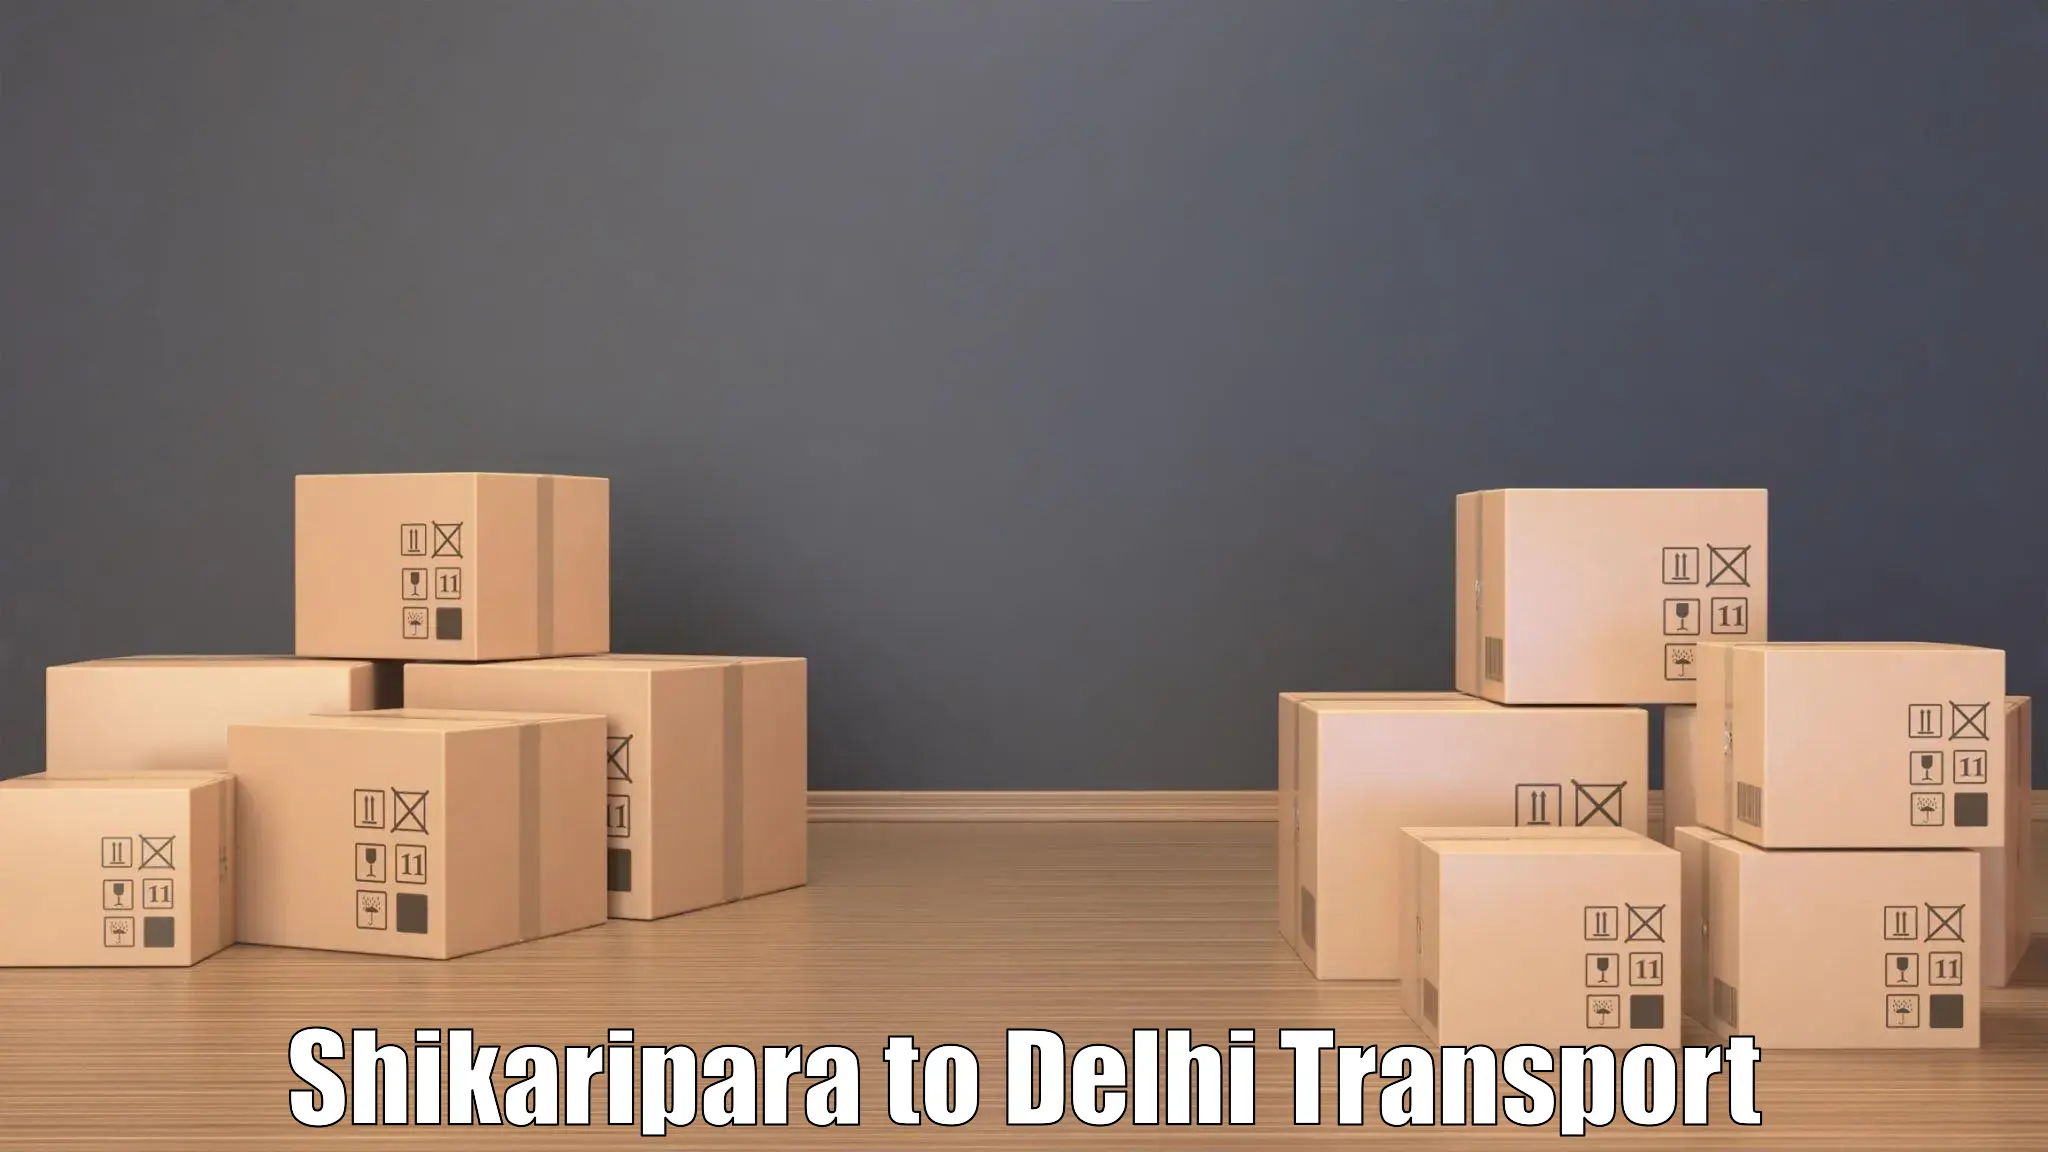 Cargo train transport services Shikaripara to Jamia Hamdard New Delhi